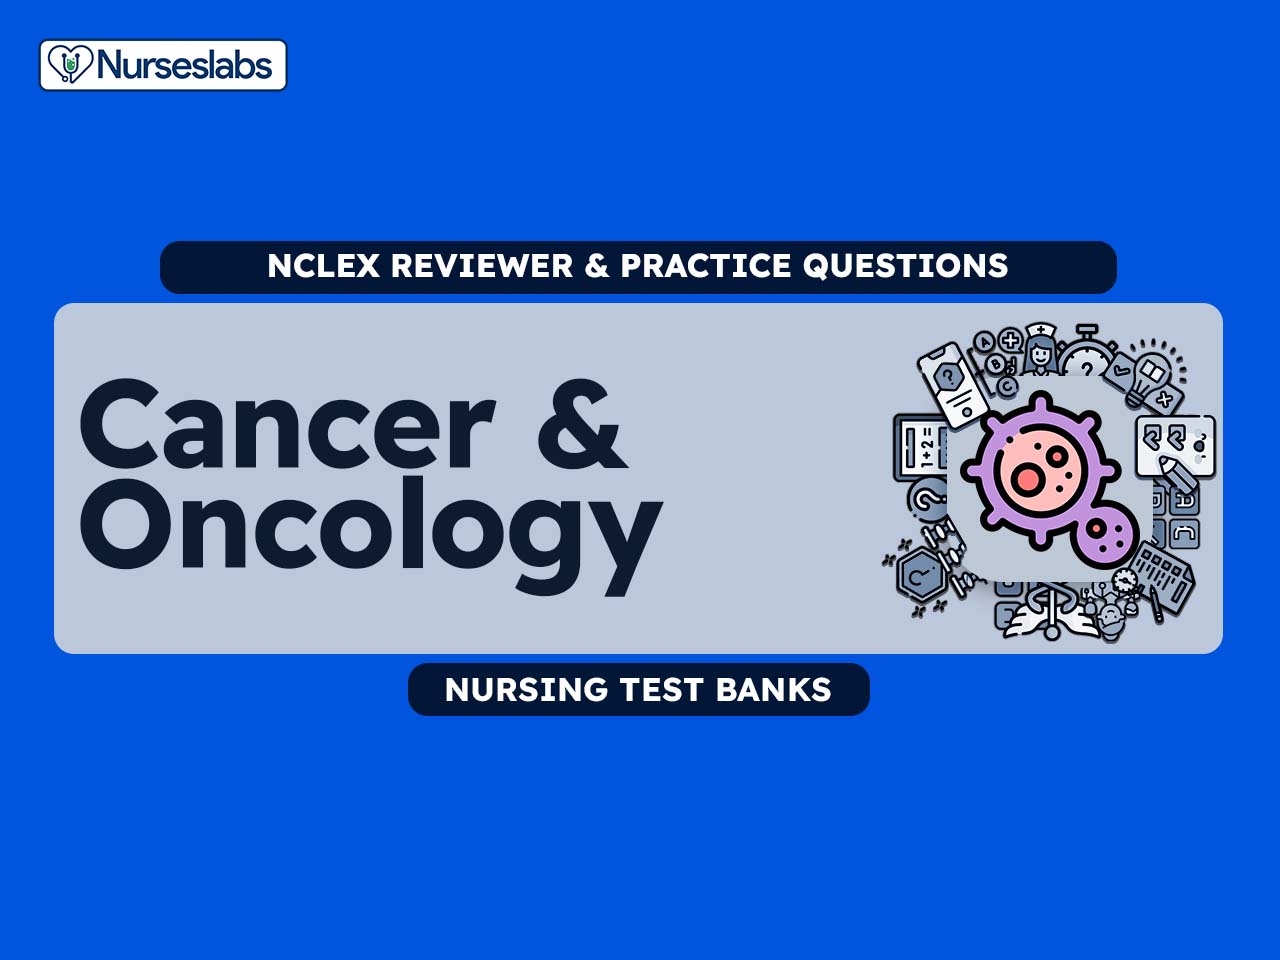 Cancer Oncology Nursing Test Banks for NCLEX RN